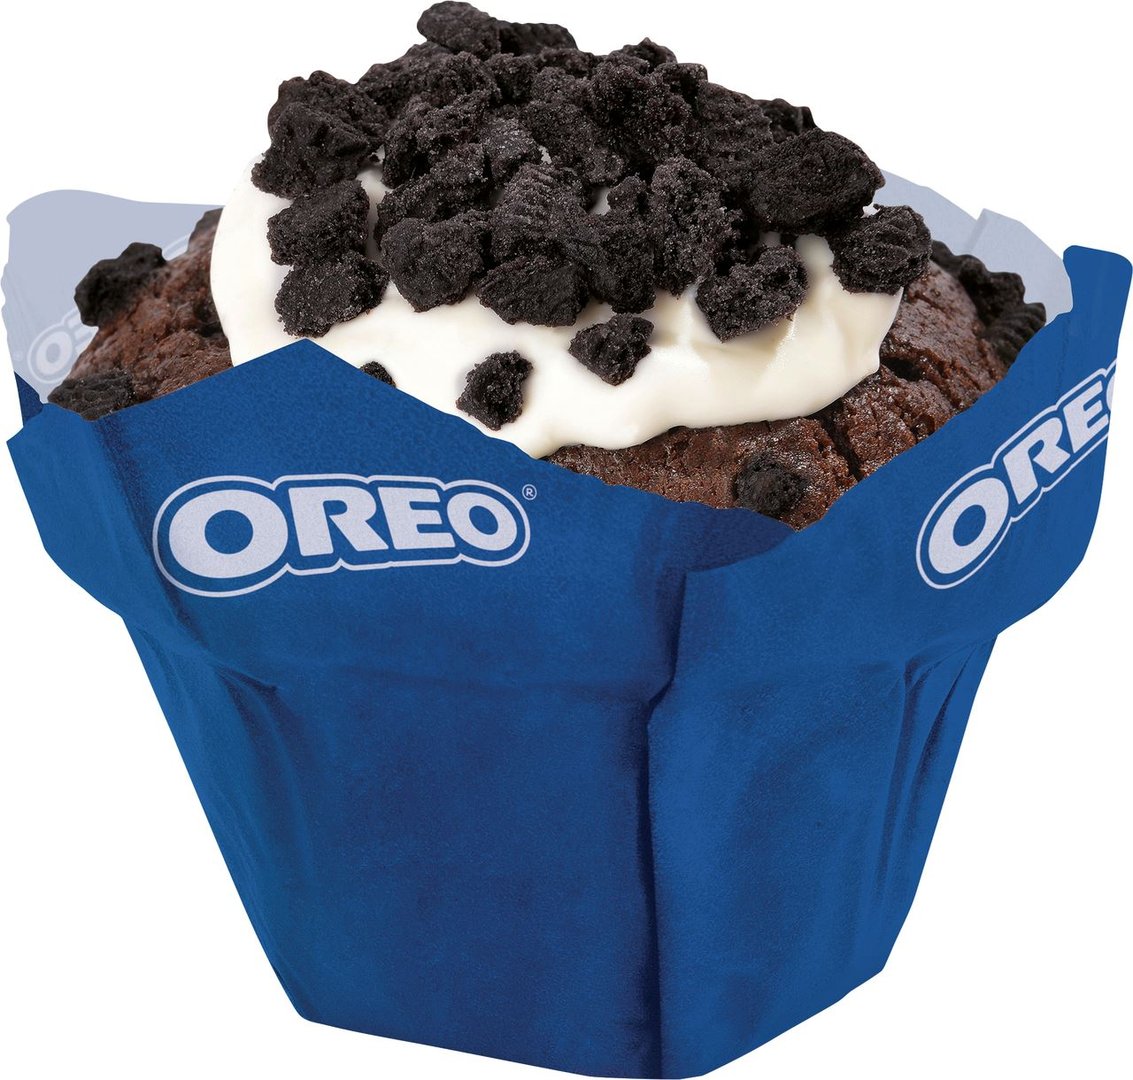 Oreo - Muffin gefüllt, Juni 2019 - 12 Stück à 110 g Packung